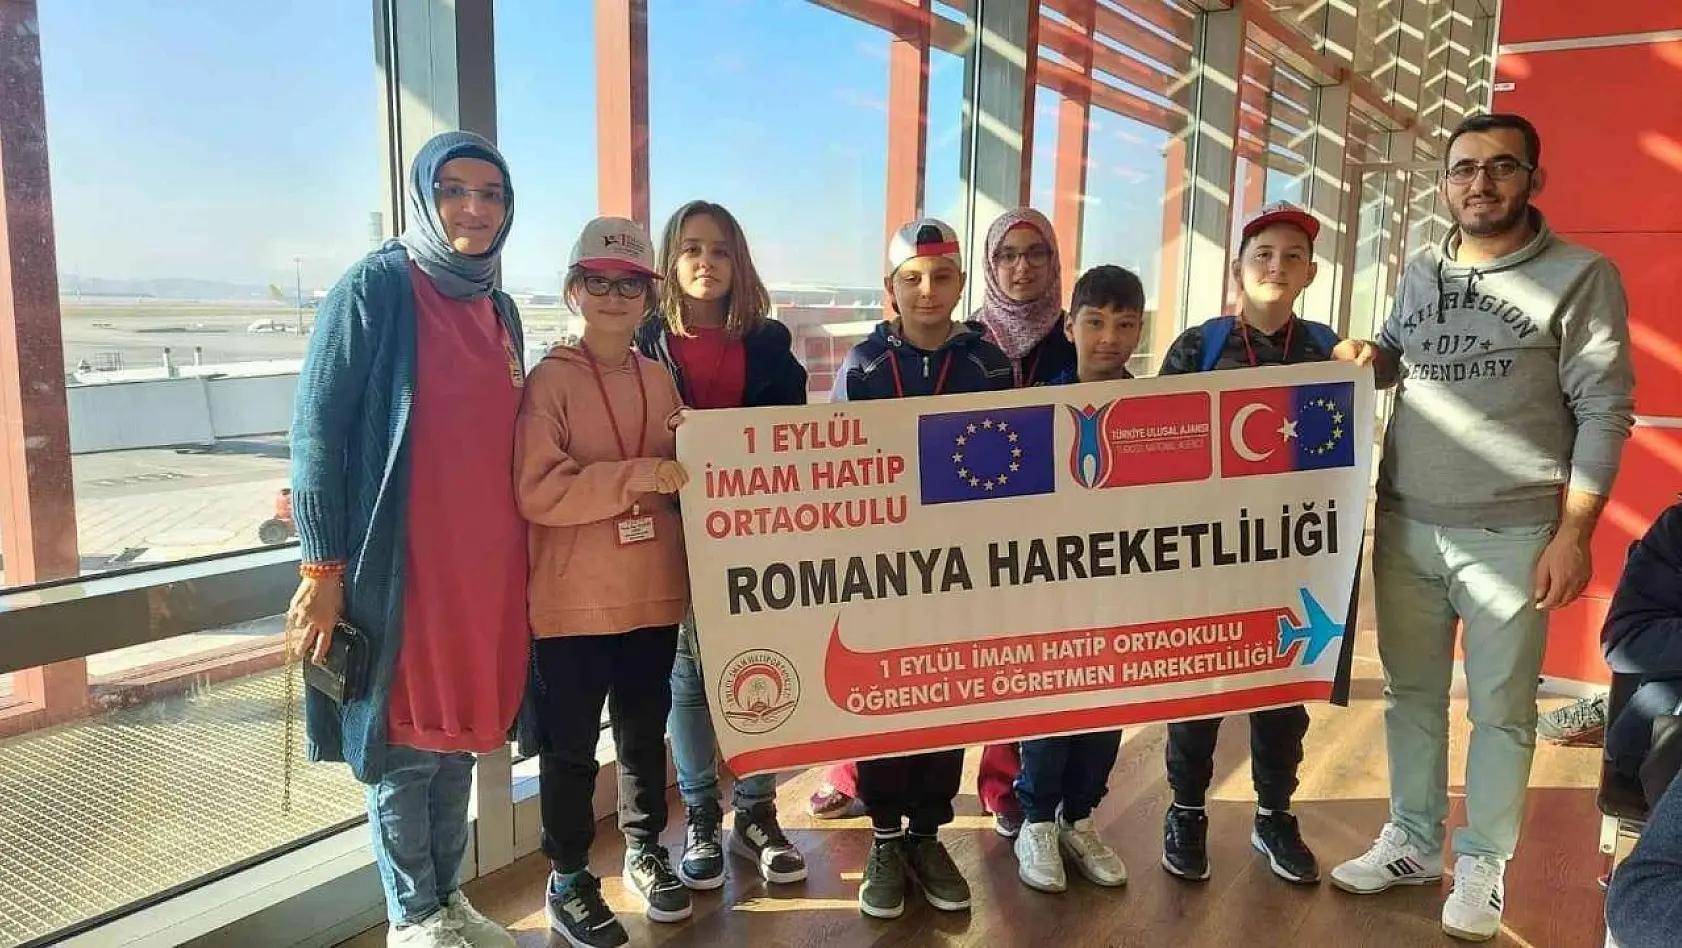 Gediz 1 Eylül İmam Hatip Ortaokulu Romanya'ya gitti